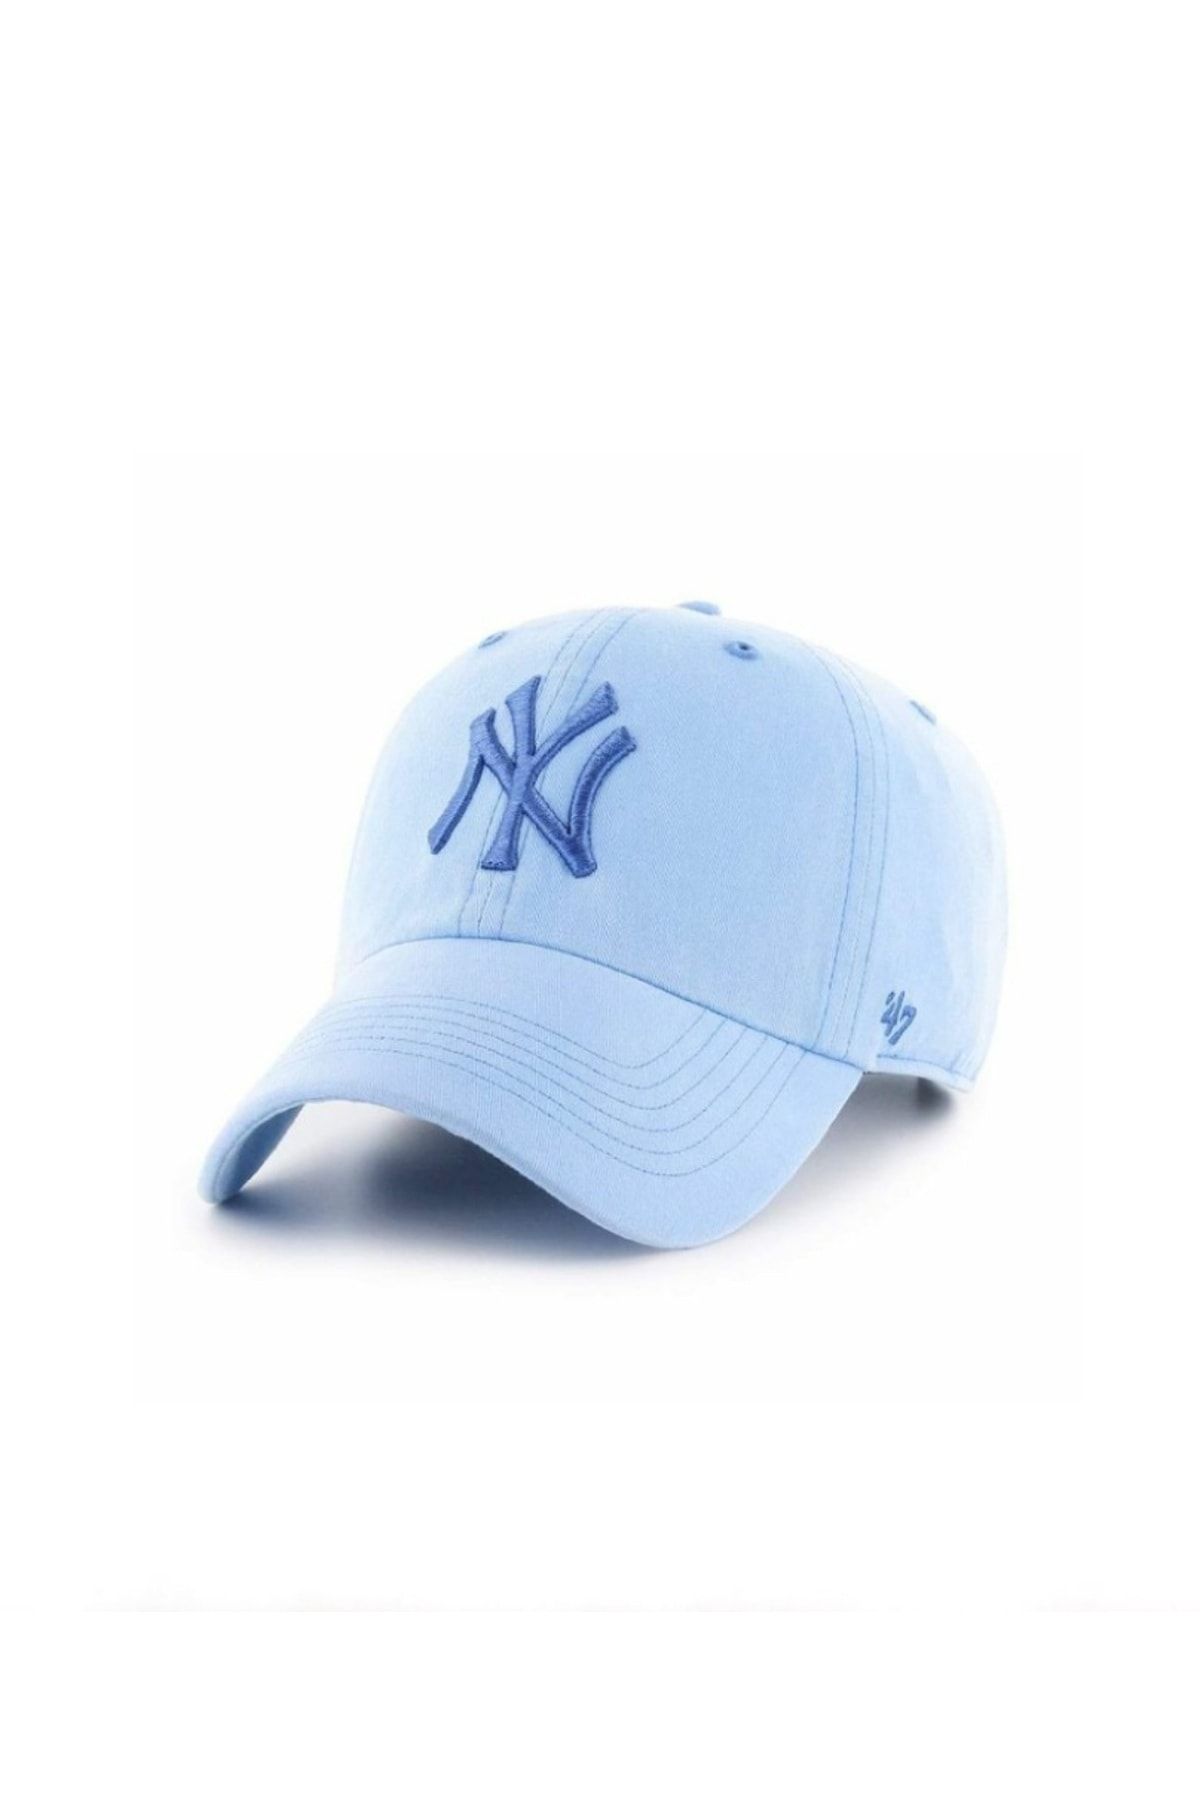 GYES Ny Sports Hat Unisex Adjustable with Velcro on the Back - Trendyol